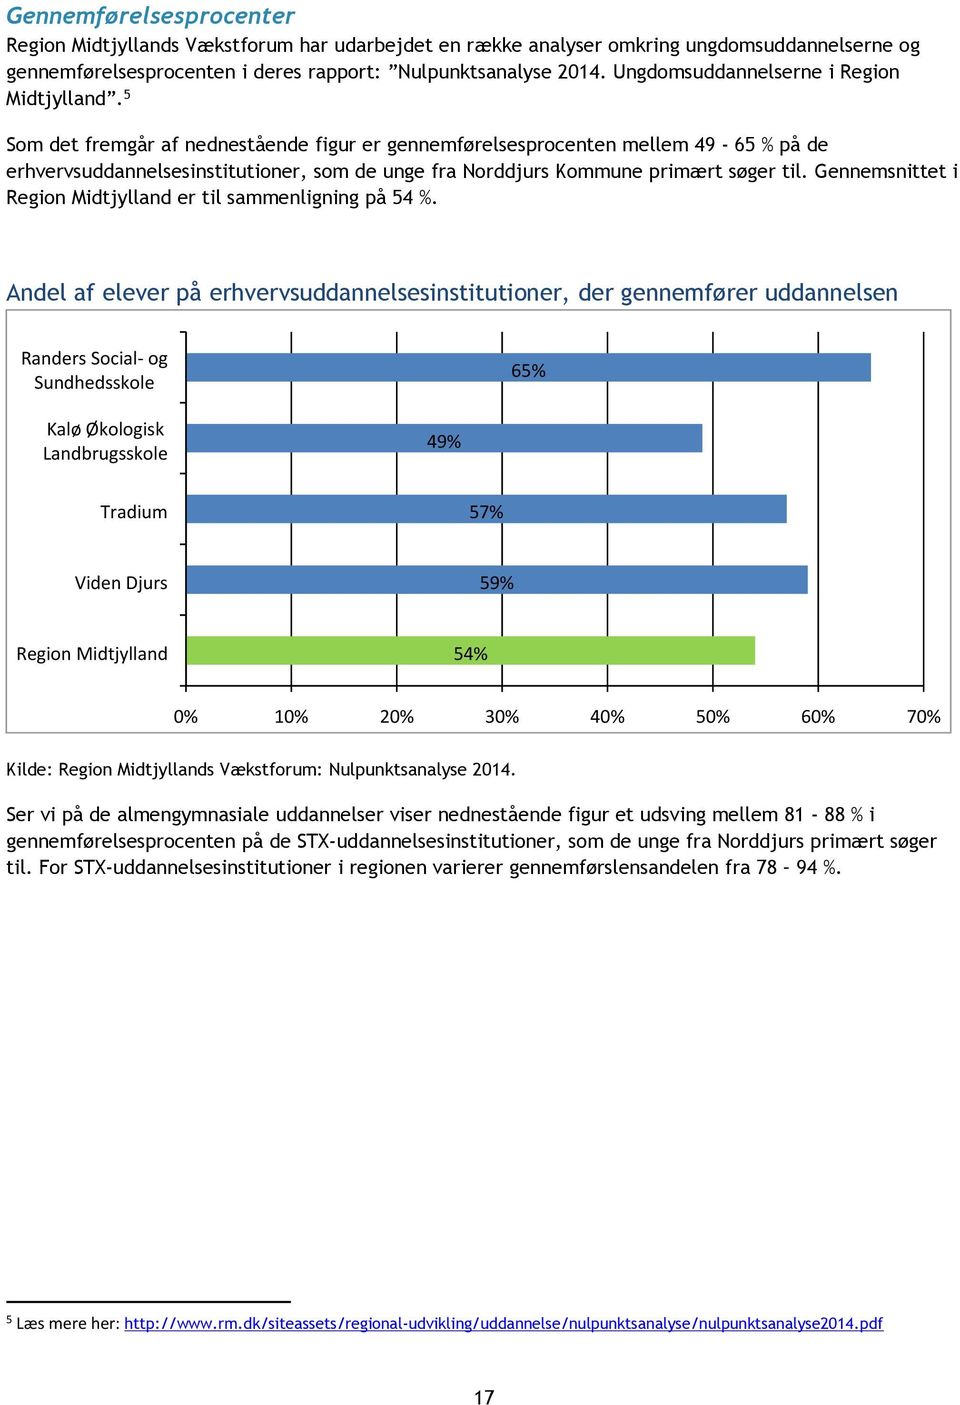 5 Som det fremgår af nednestående figur er gennemførelsesprocenten mellem 49-65 % på de erhvervsuddannelsesinstitutioner, som de unge fra Norddjurs Kommune primært søger til.